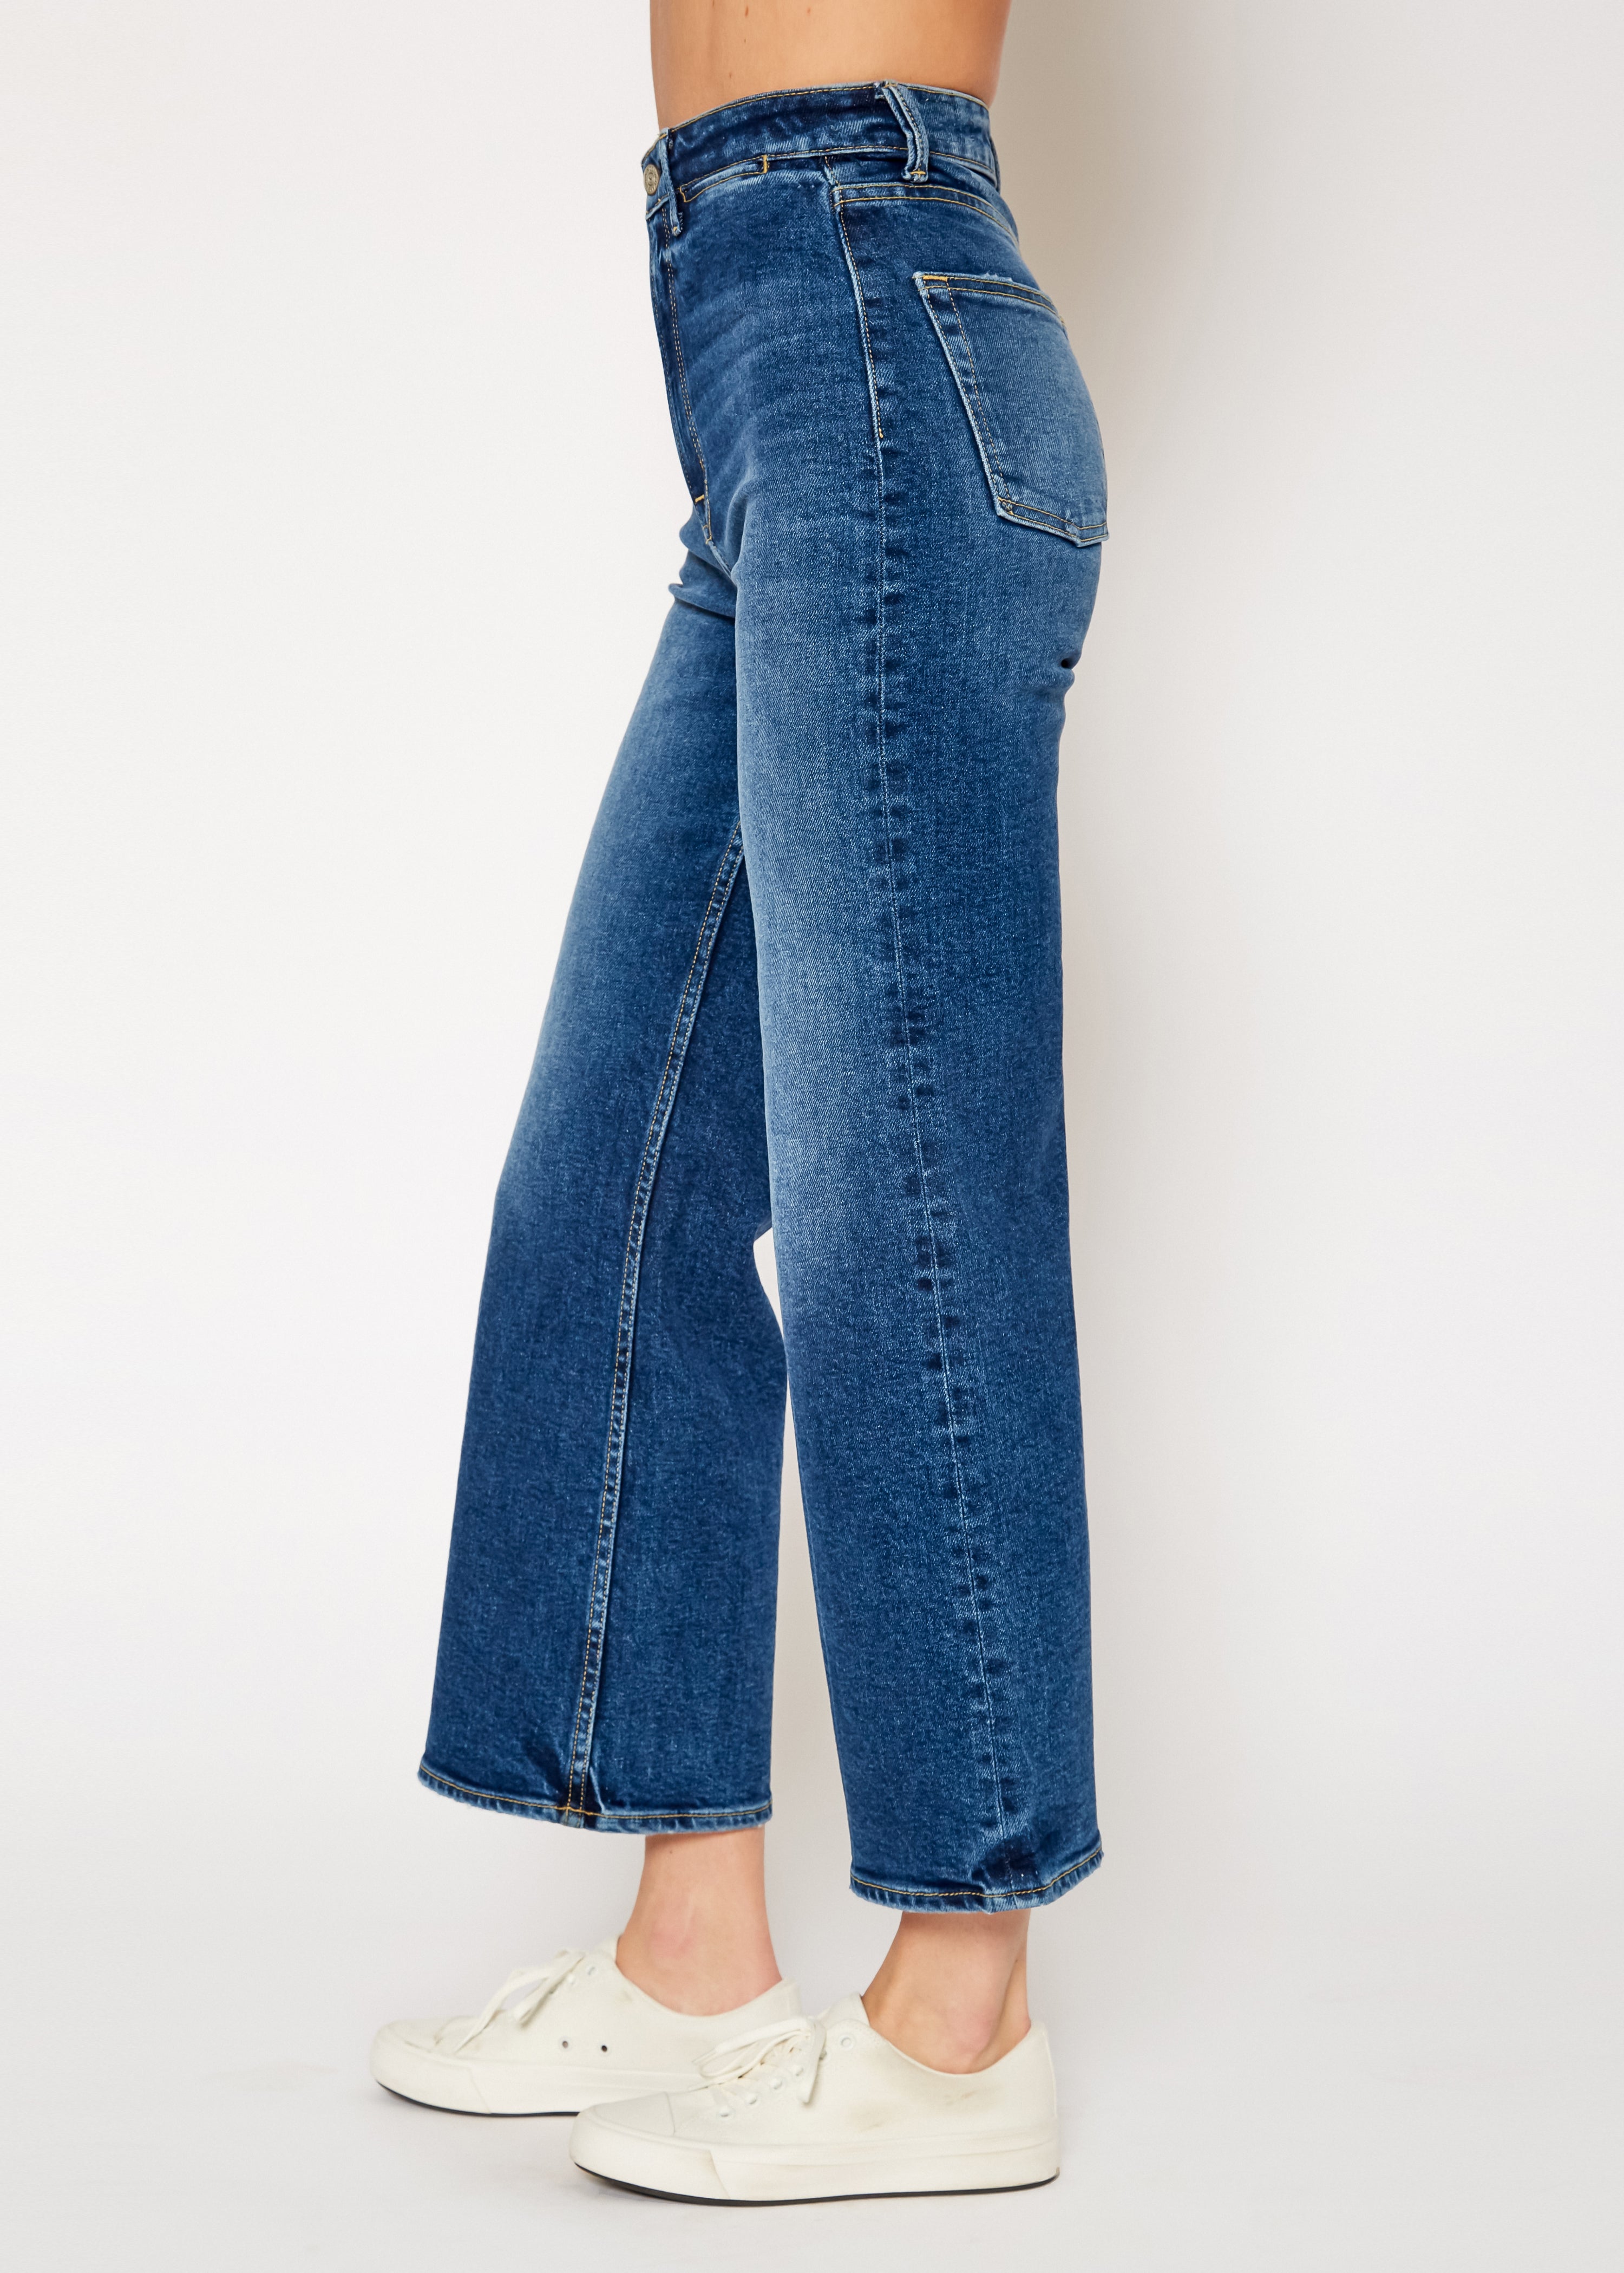 Queen Wide Leg Crop Jeans In Kingman - Noend Denim